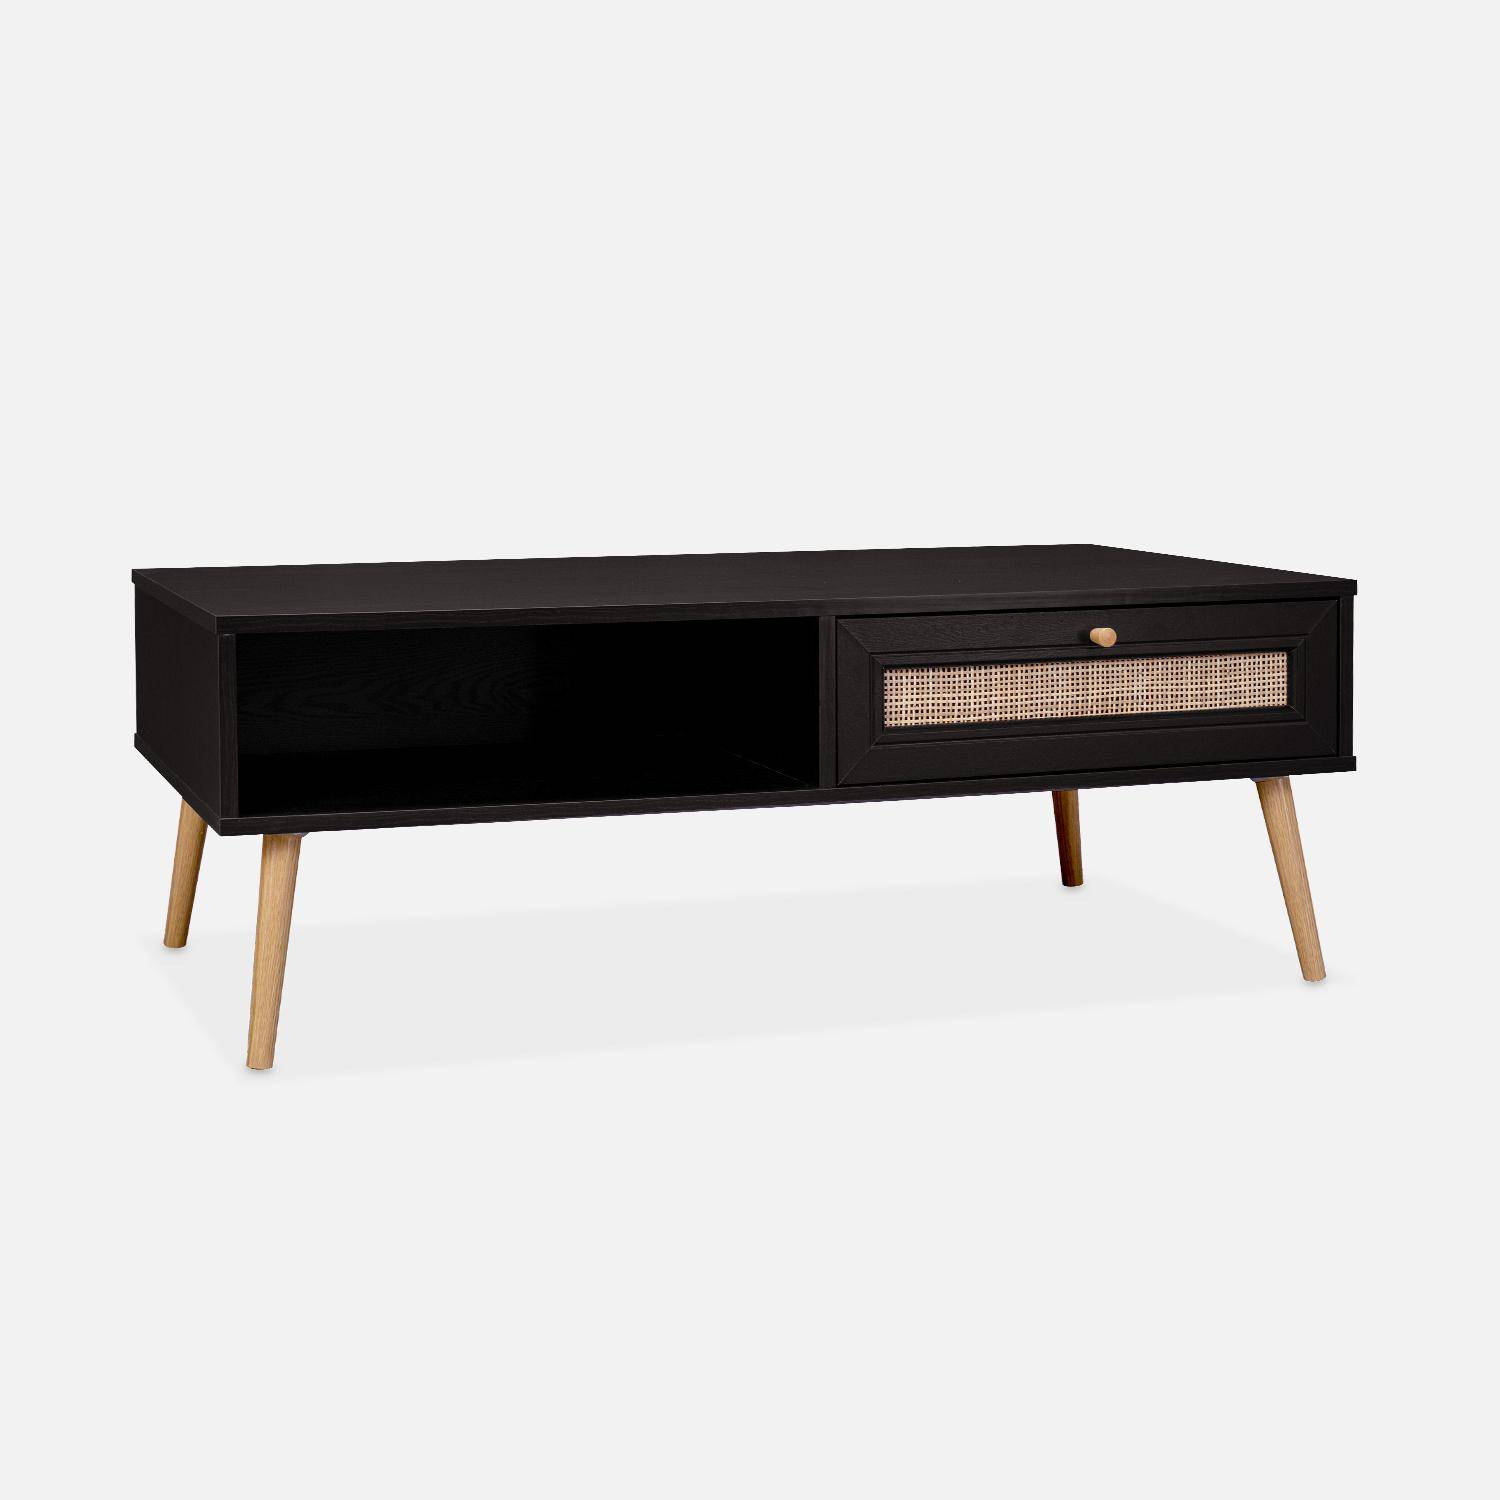 Table basse en cannage 110x59x39cm - Bohème - Noir, 1 tiroir, 1 espace de rangement, pieds scandinaves Photo2